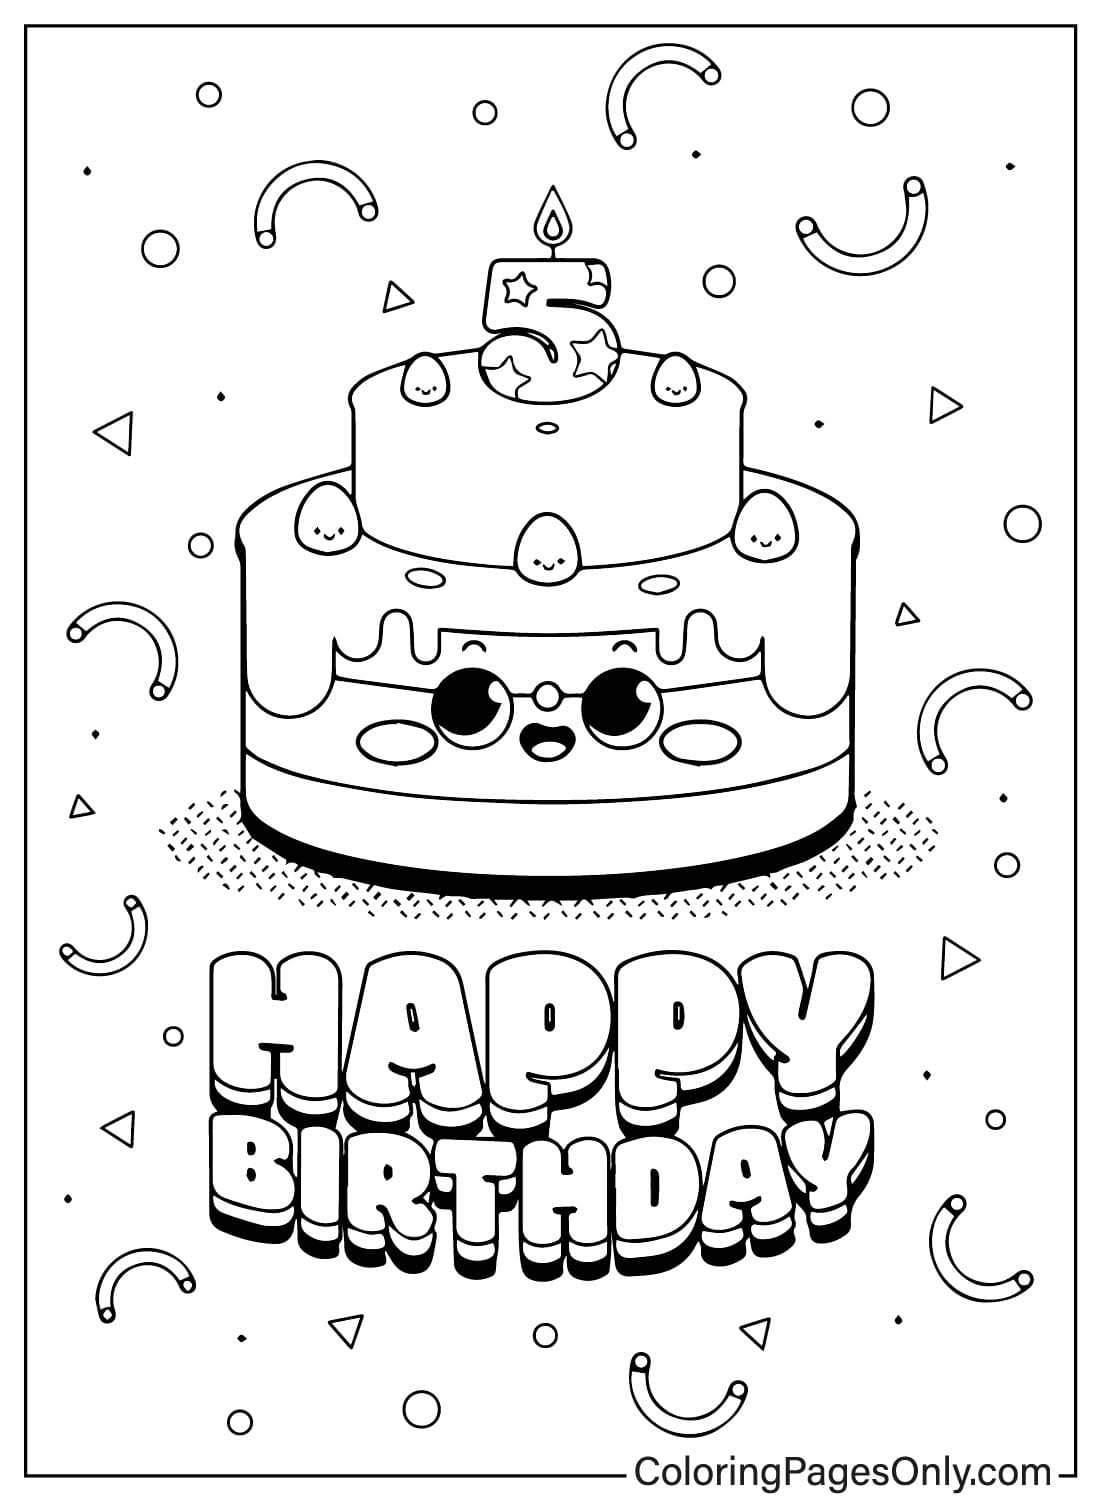 Изображения торта ко дню рождения, чтобы раскрасить торт ко дню рождения